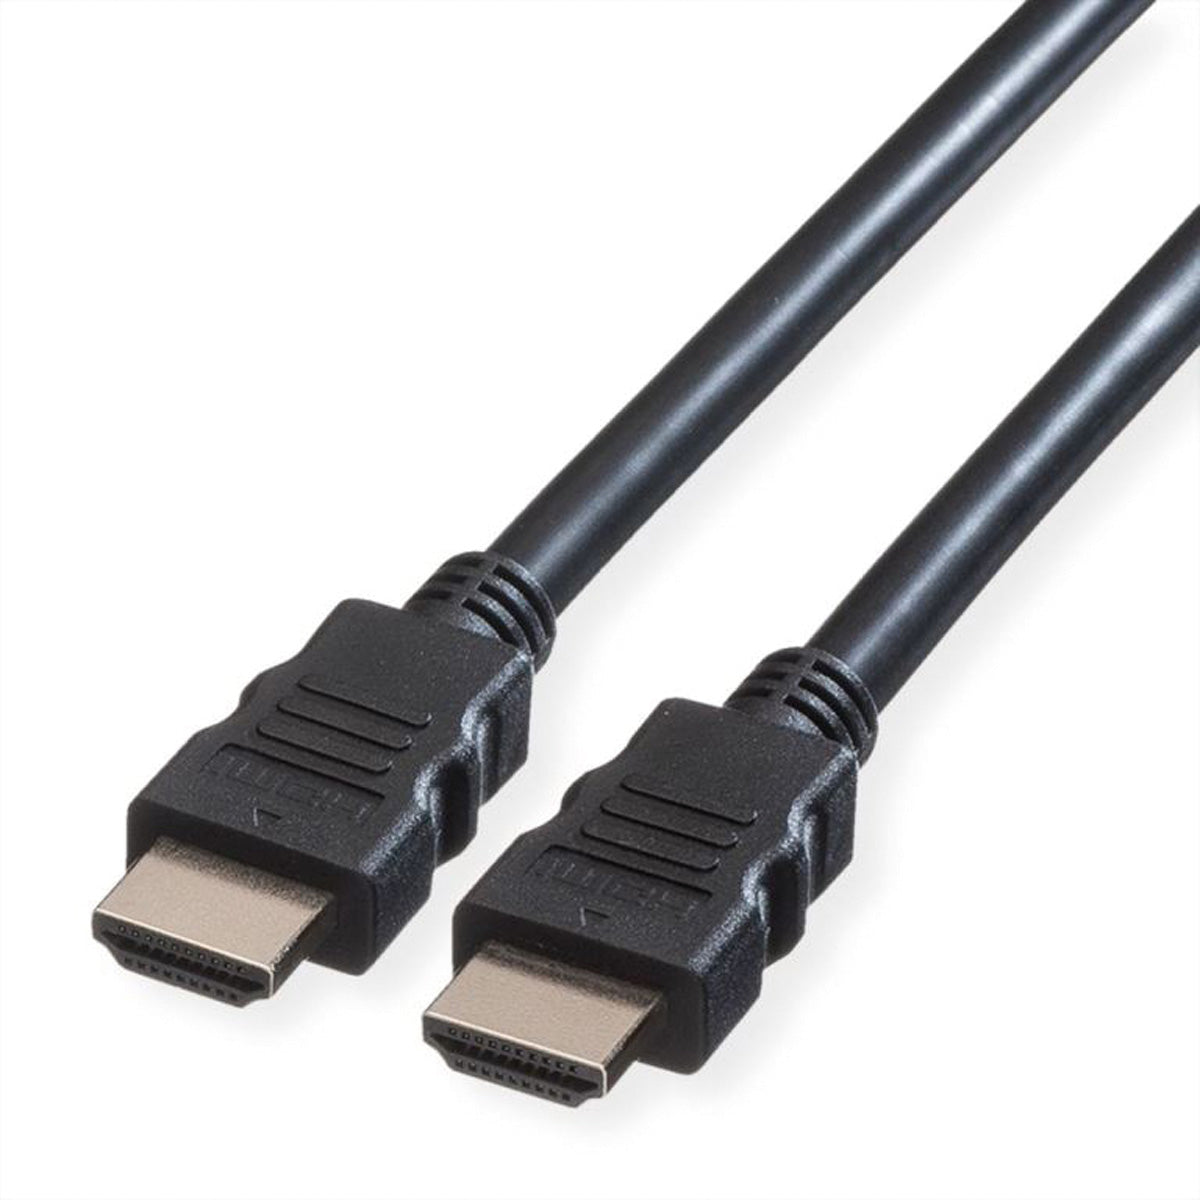 VALUE Ultra High Speed - HDMI-Kabel mit Ethernet - HDMI männlich zu HDMI männlich - 10 m - Doppelisolierung - Schwarz - unterstützt 8K 60 Hz (7680 x 4320)